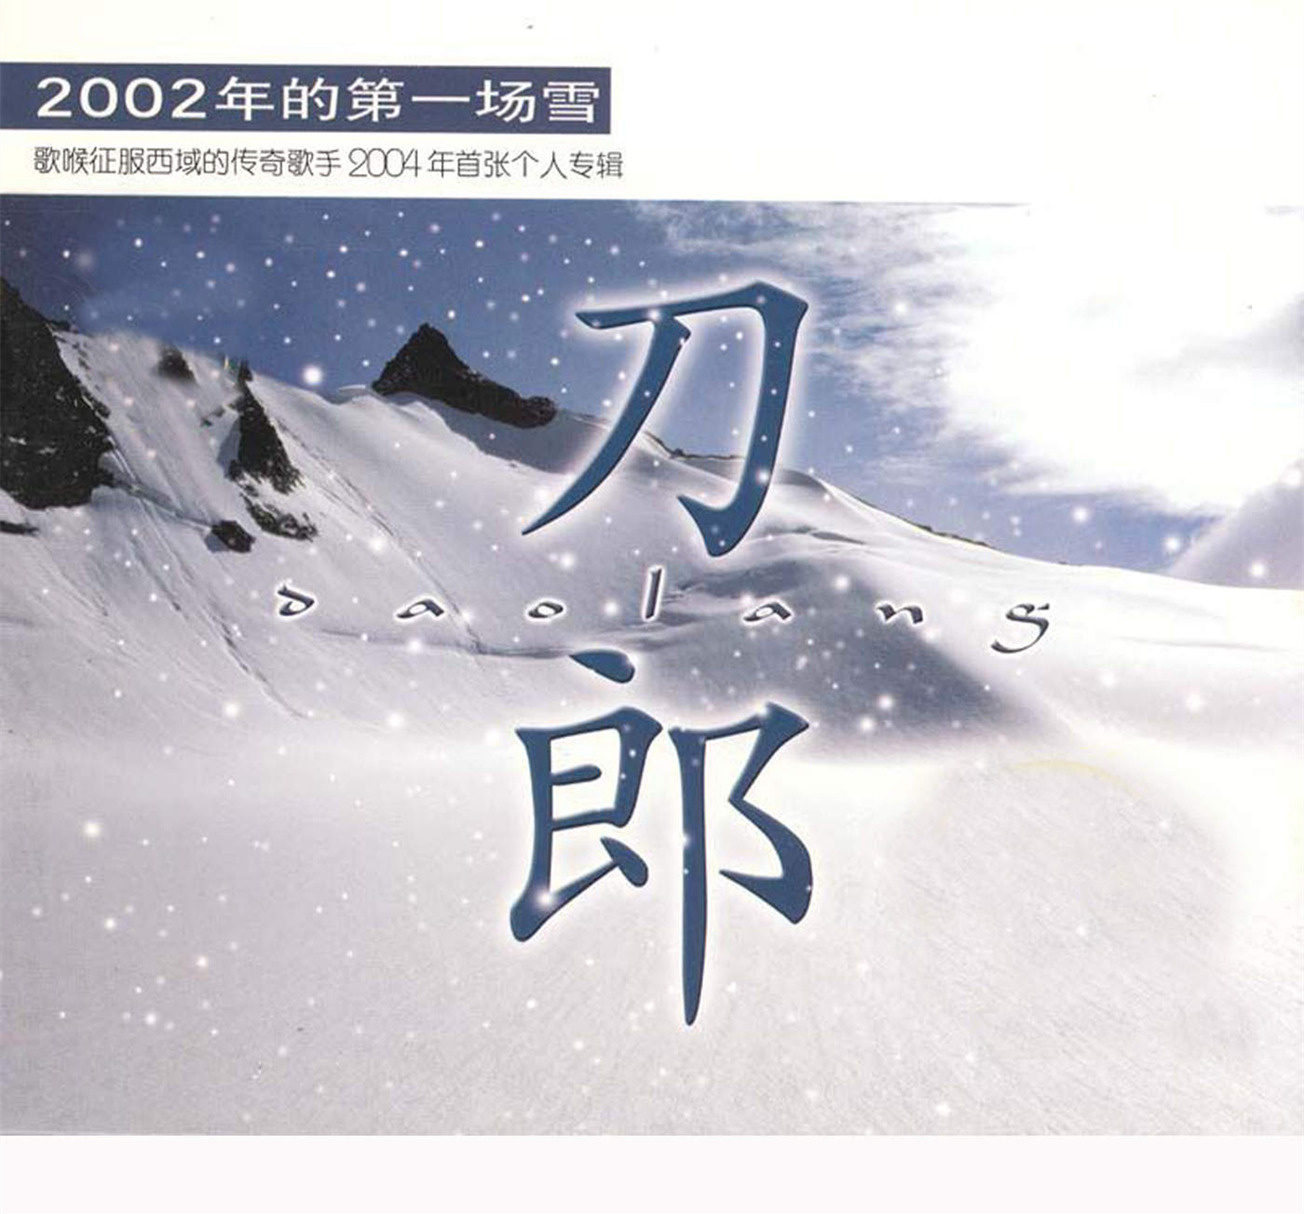 2002年的第一场雪